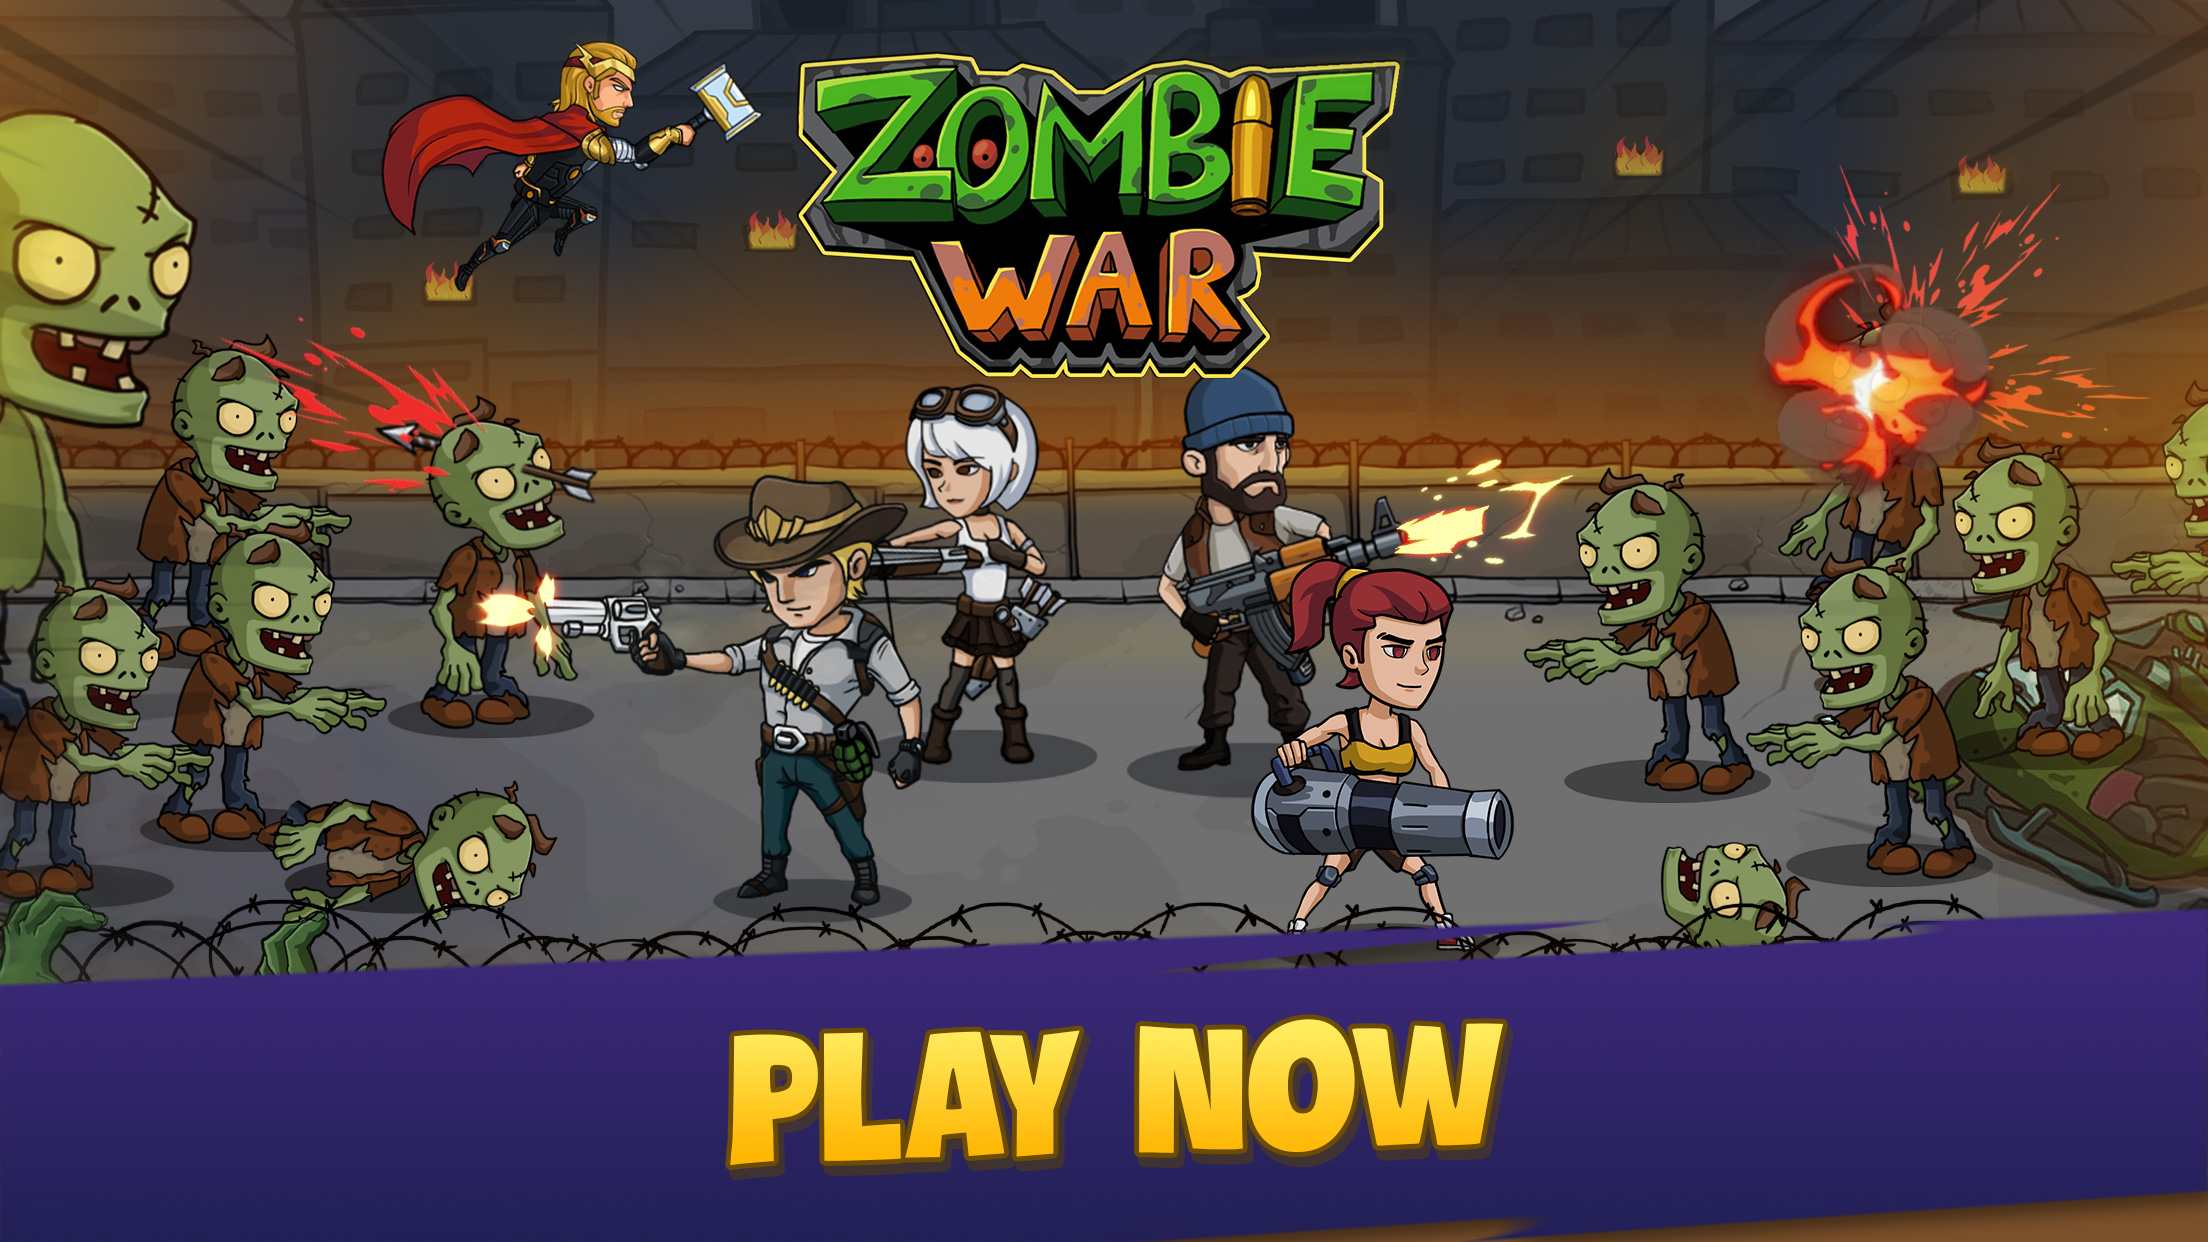 Afk zombie apocalypse game global. Игра Zombie td.